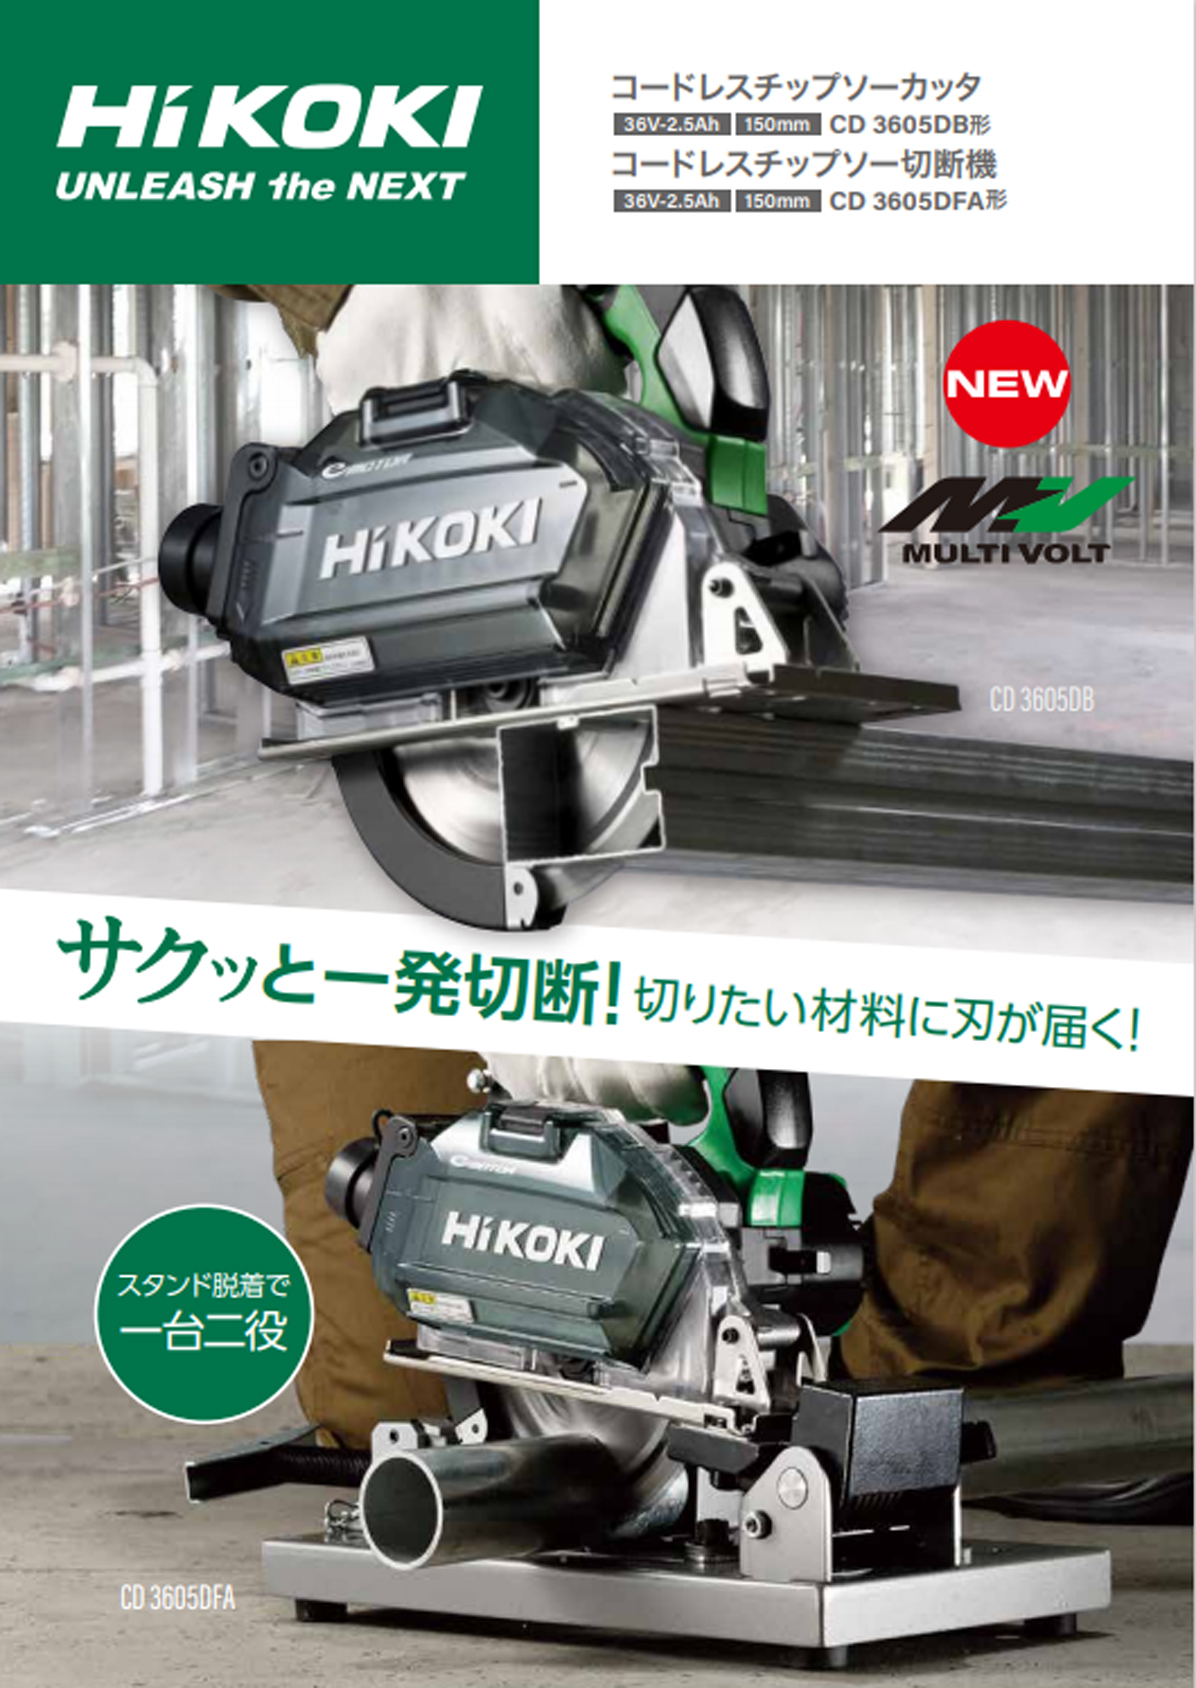 HiKOKI CD3605DB(XP) 150mmコードレスチップソーカッタ ウエダ金物【公式サイト】